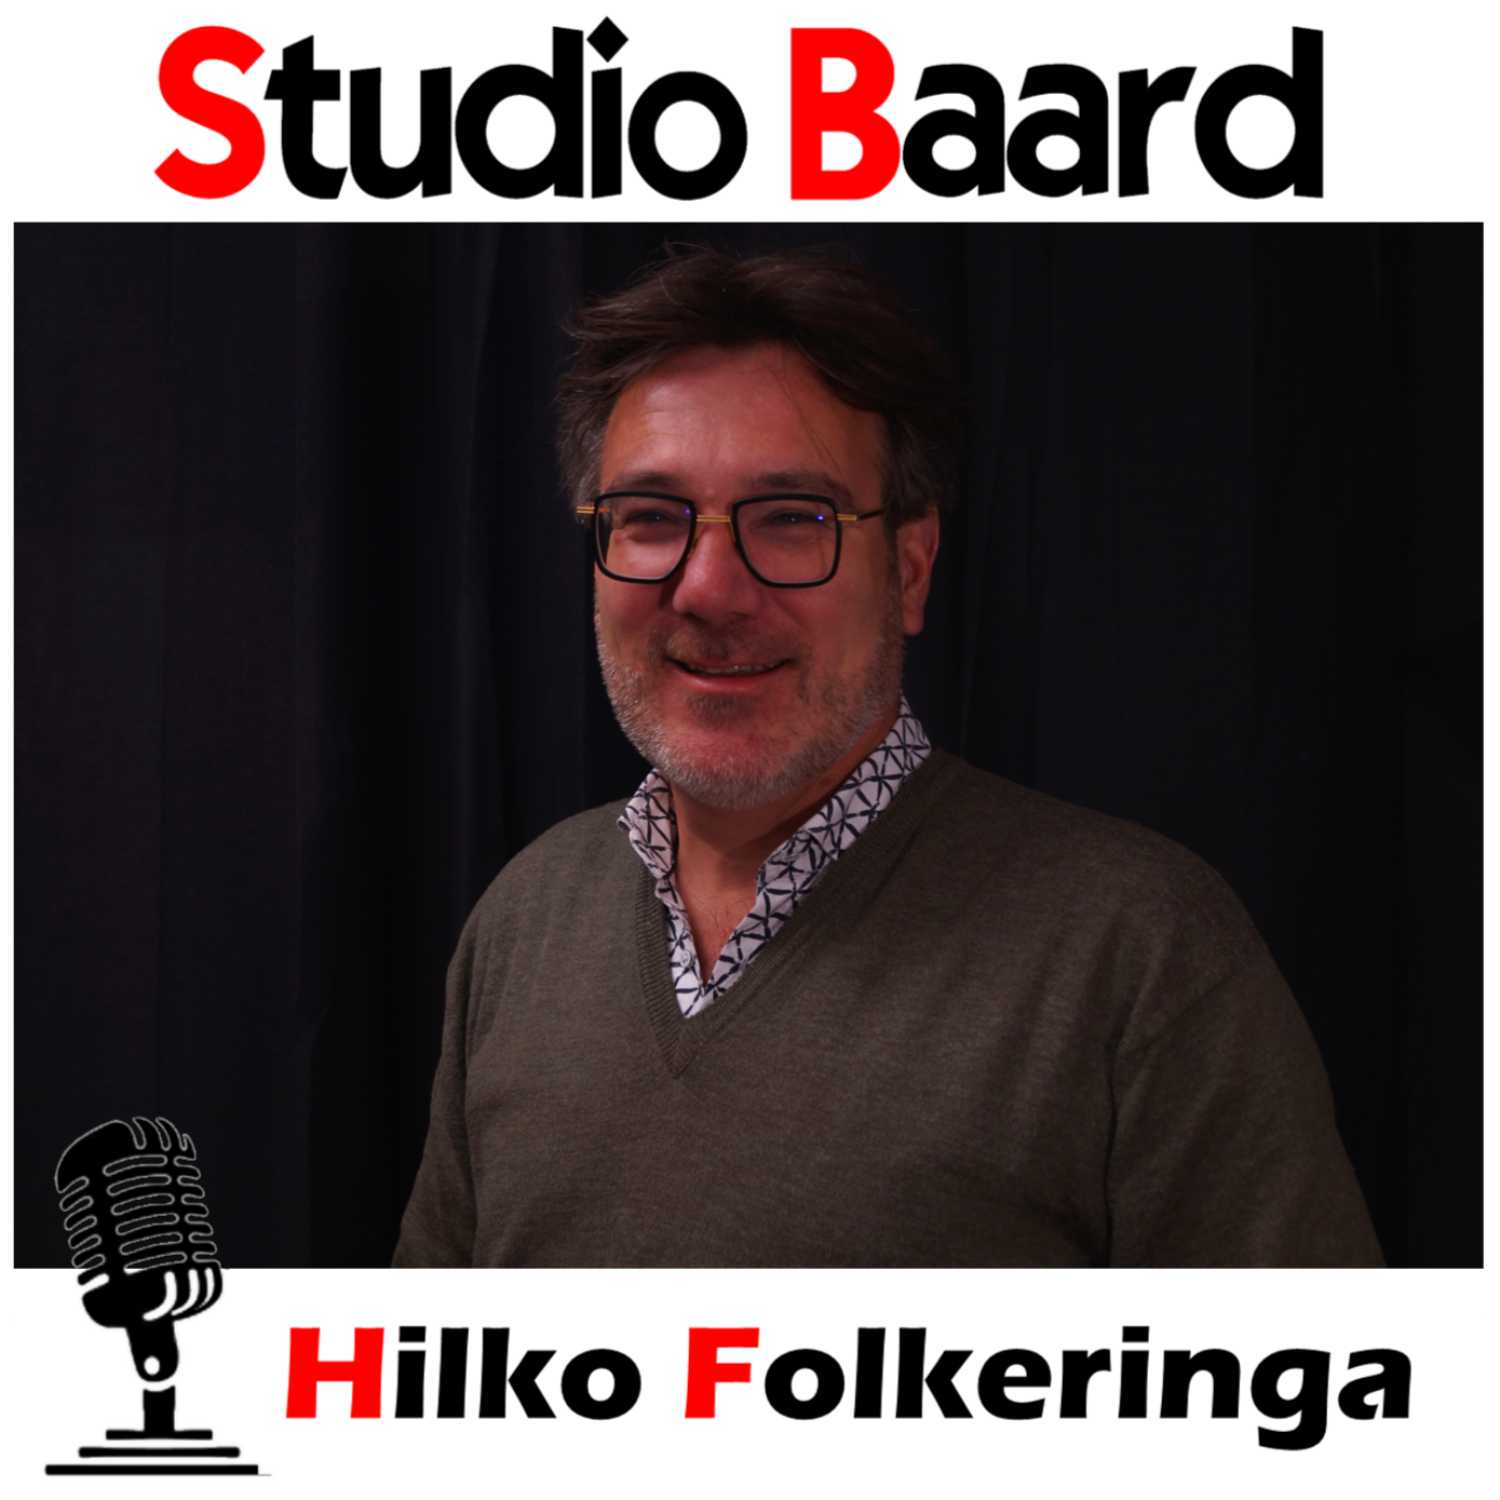 Studio Baard met Hilko Folkeringa (deel 1)